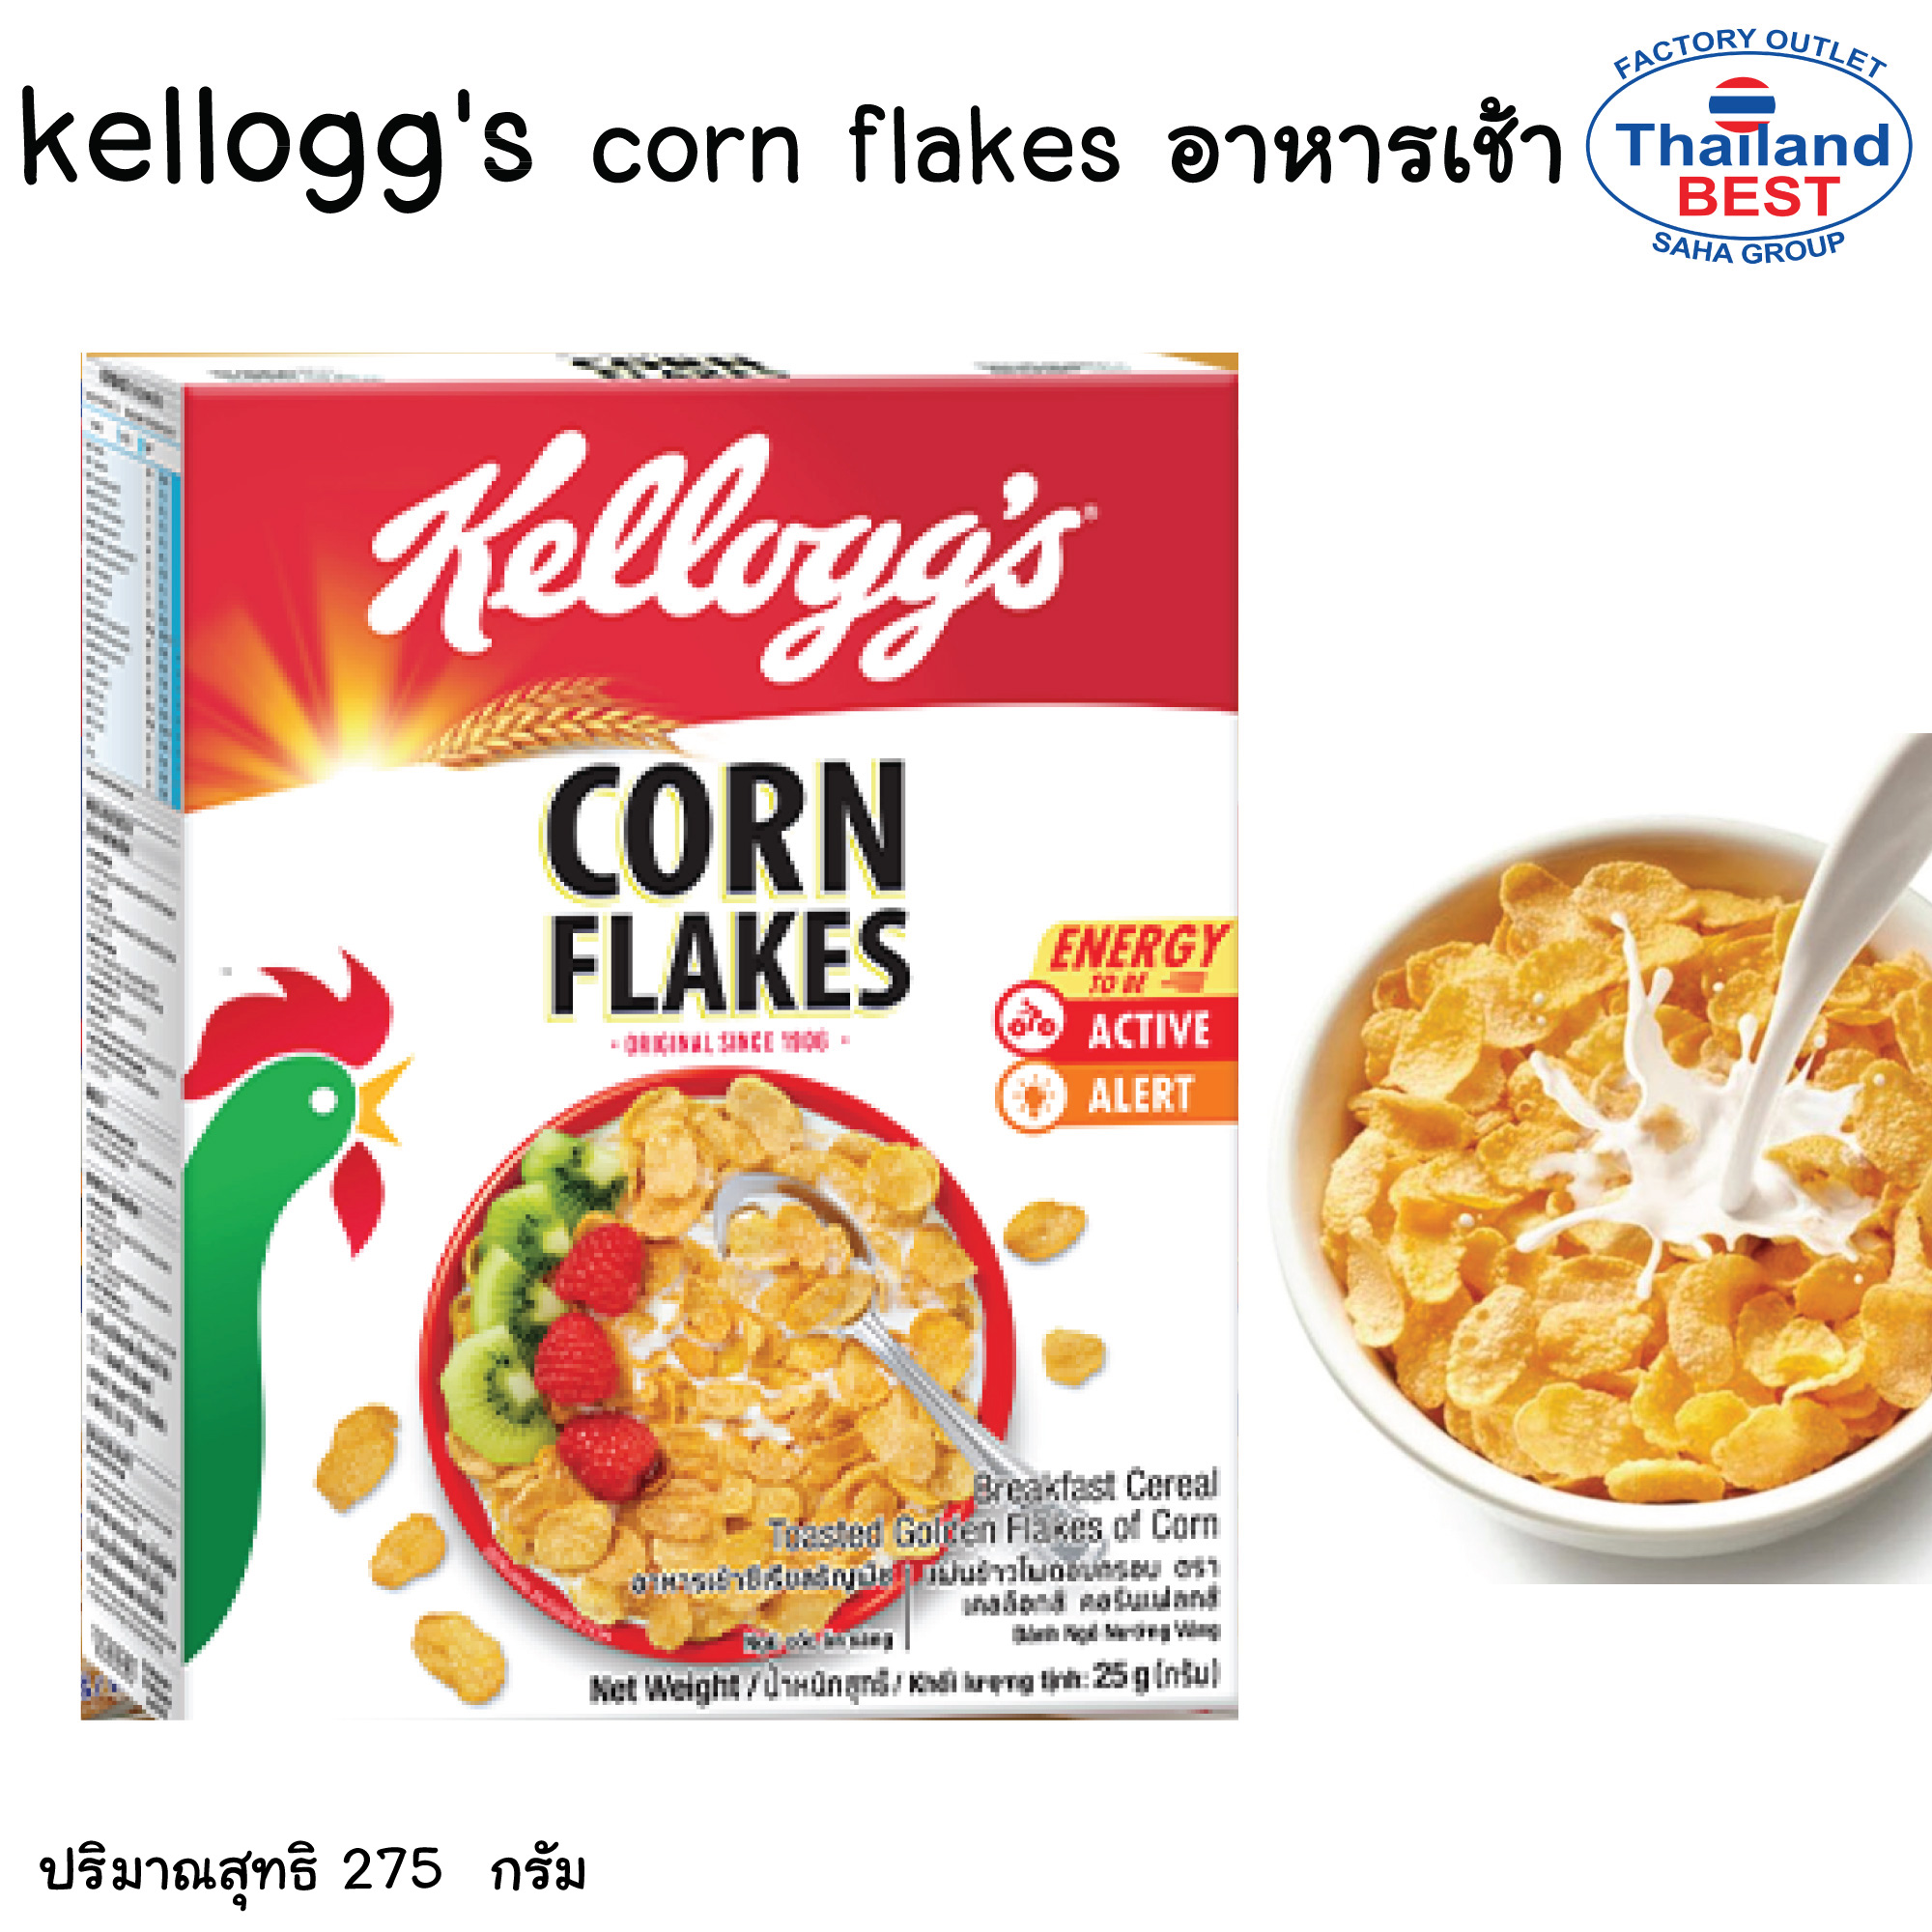 Kellogg เคลล็อกส์ คอร์นเฟลกส์  อาหารเช้าซีเรียลธัญพืช แผ่นข้าวโพดอบกรอบ  ขนาด 275 กรัม ( สินค้าพร้อมจัดส่ง )